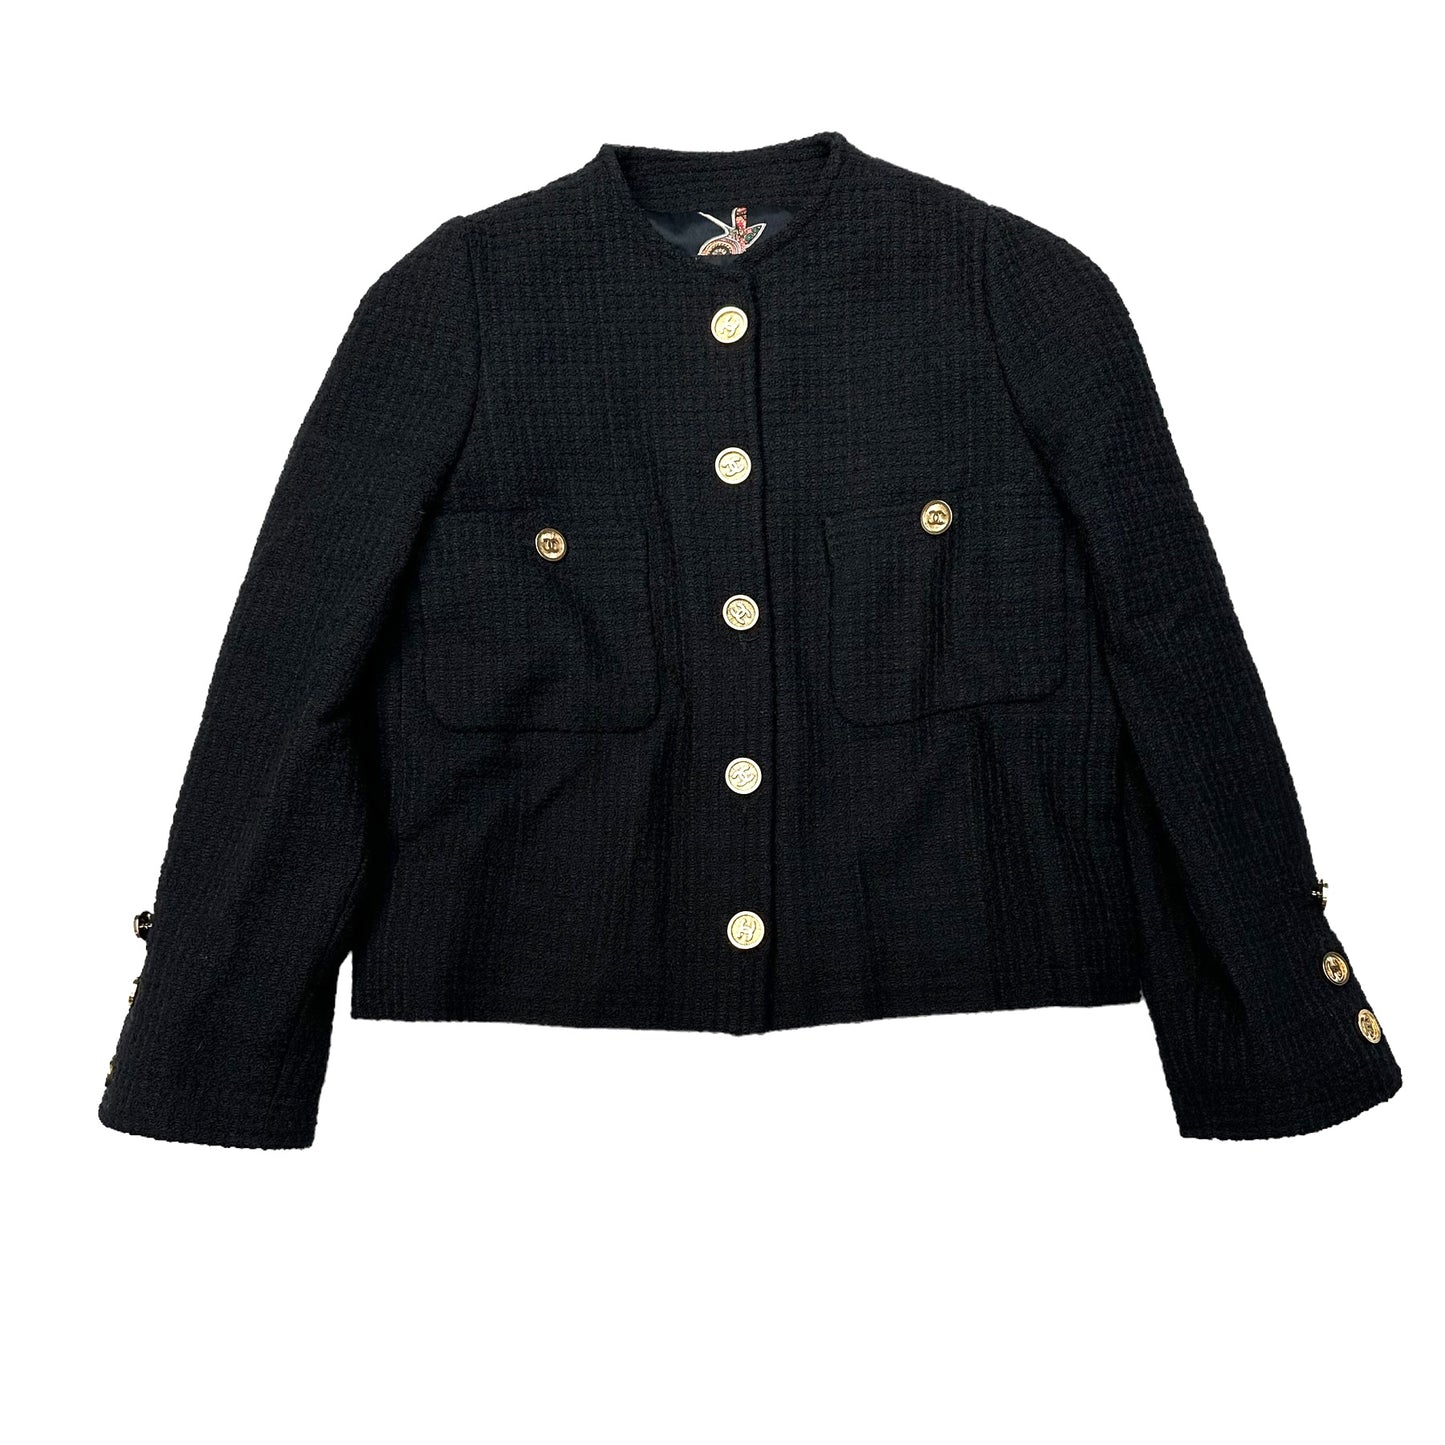 Black Tweed Jacket - M